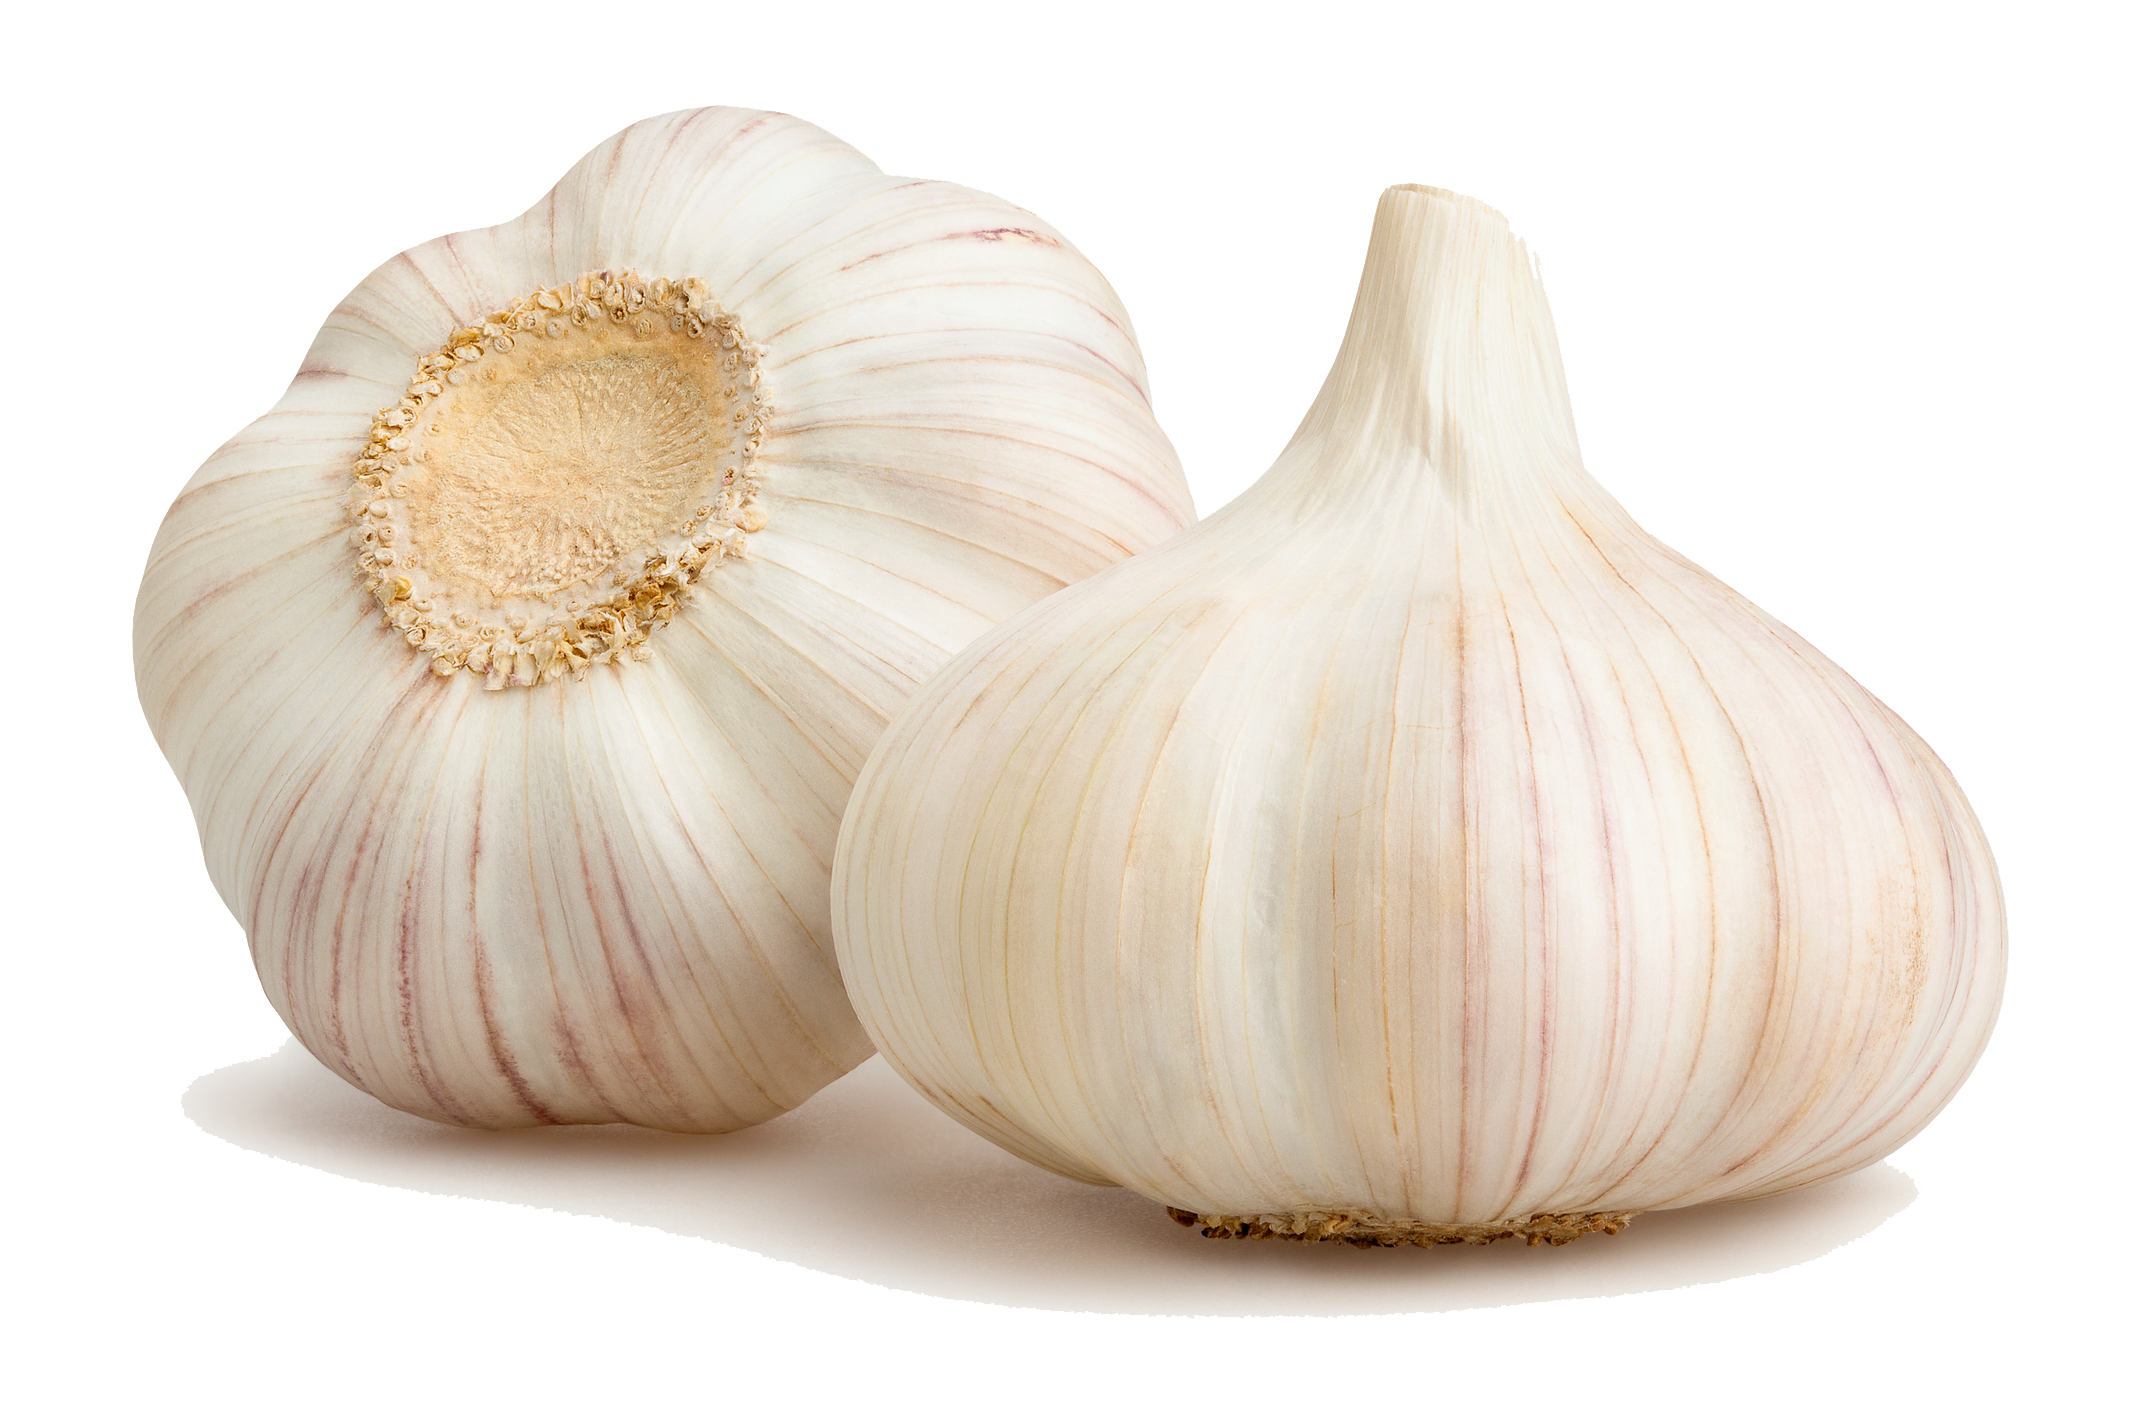 two bulbs of garlic